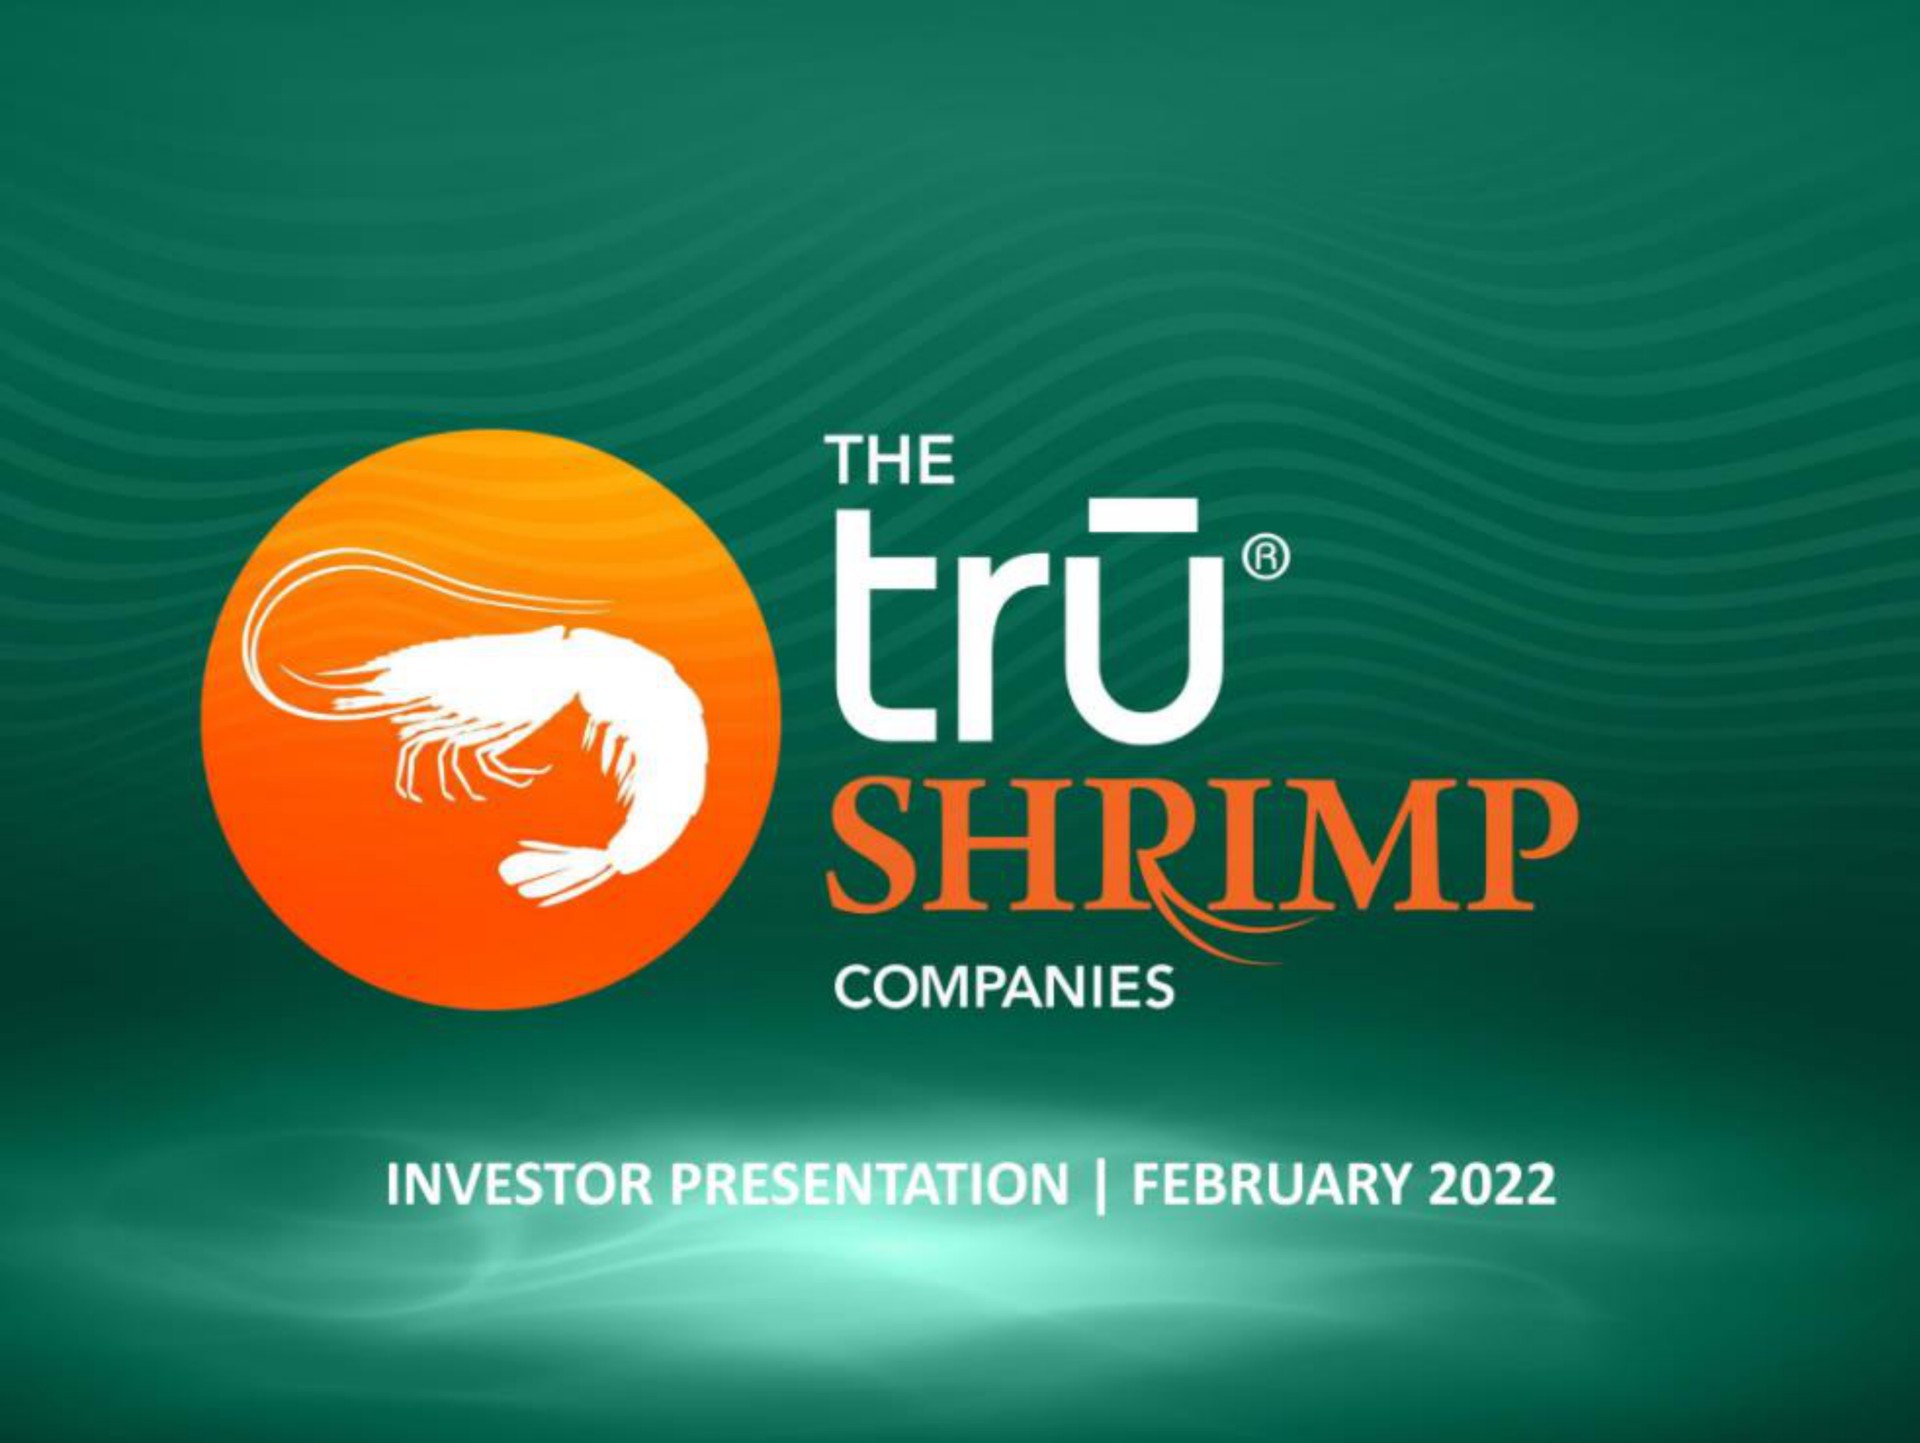 the a shrimp companies | tru Shrimp